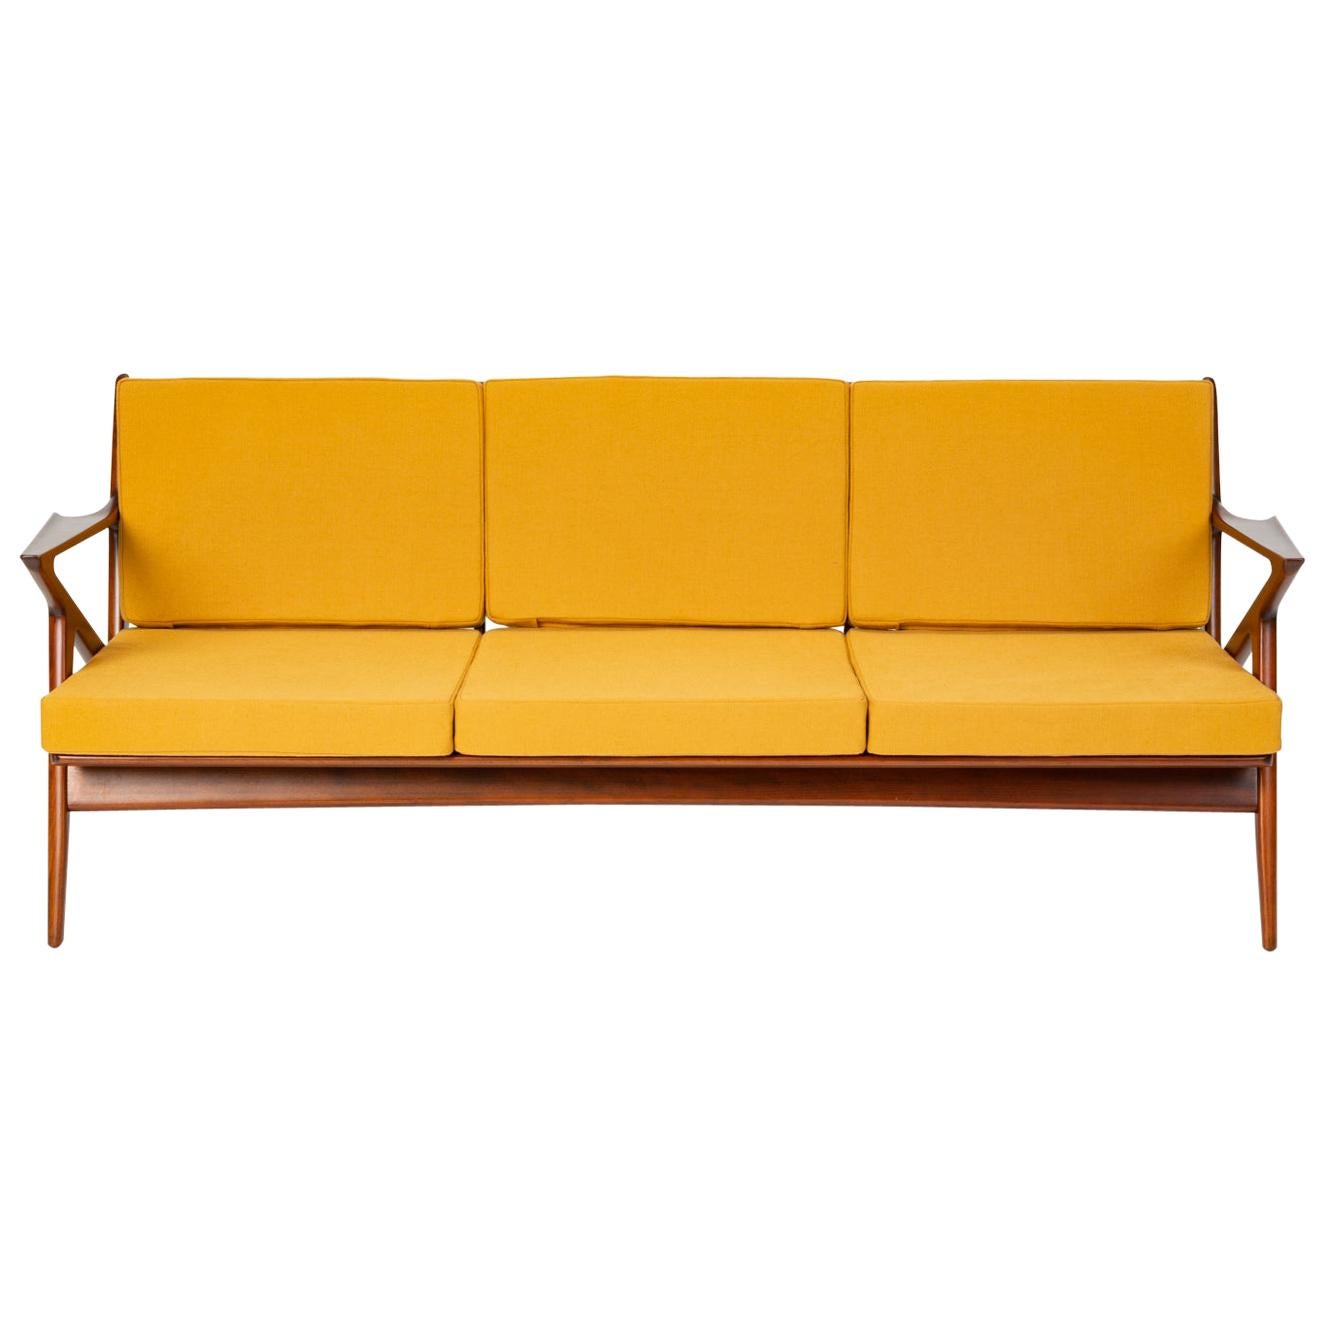 Z Sofa by Poul Jensen for Selig